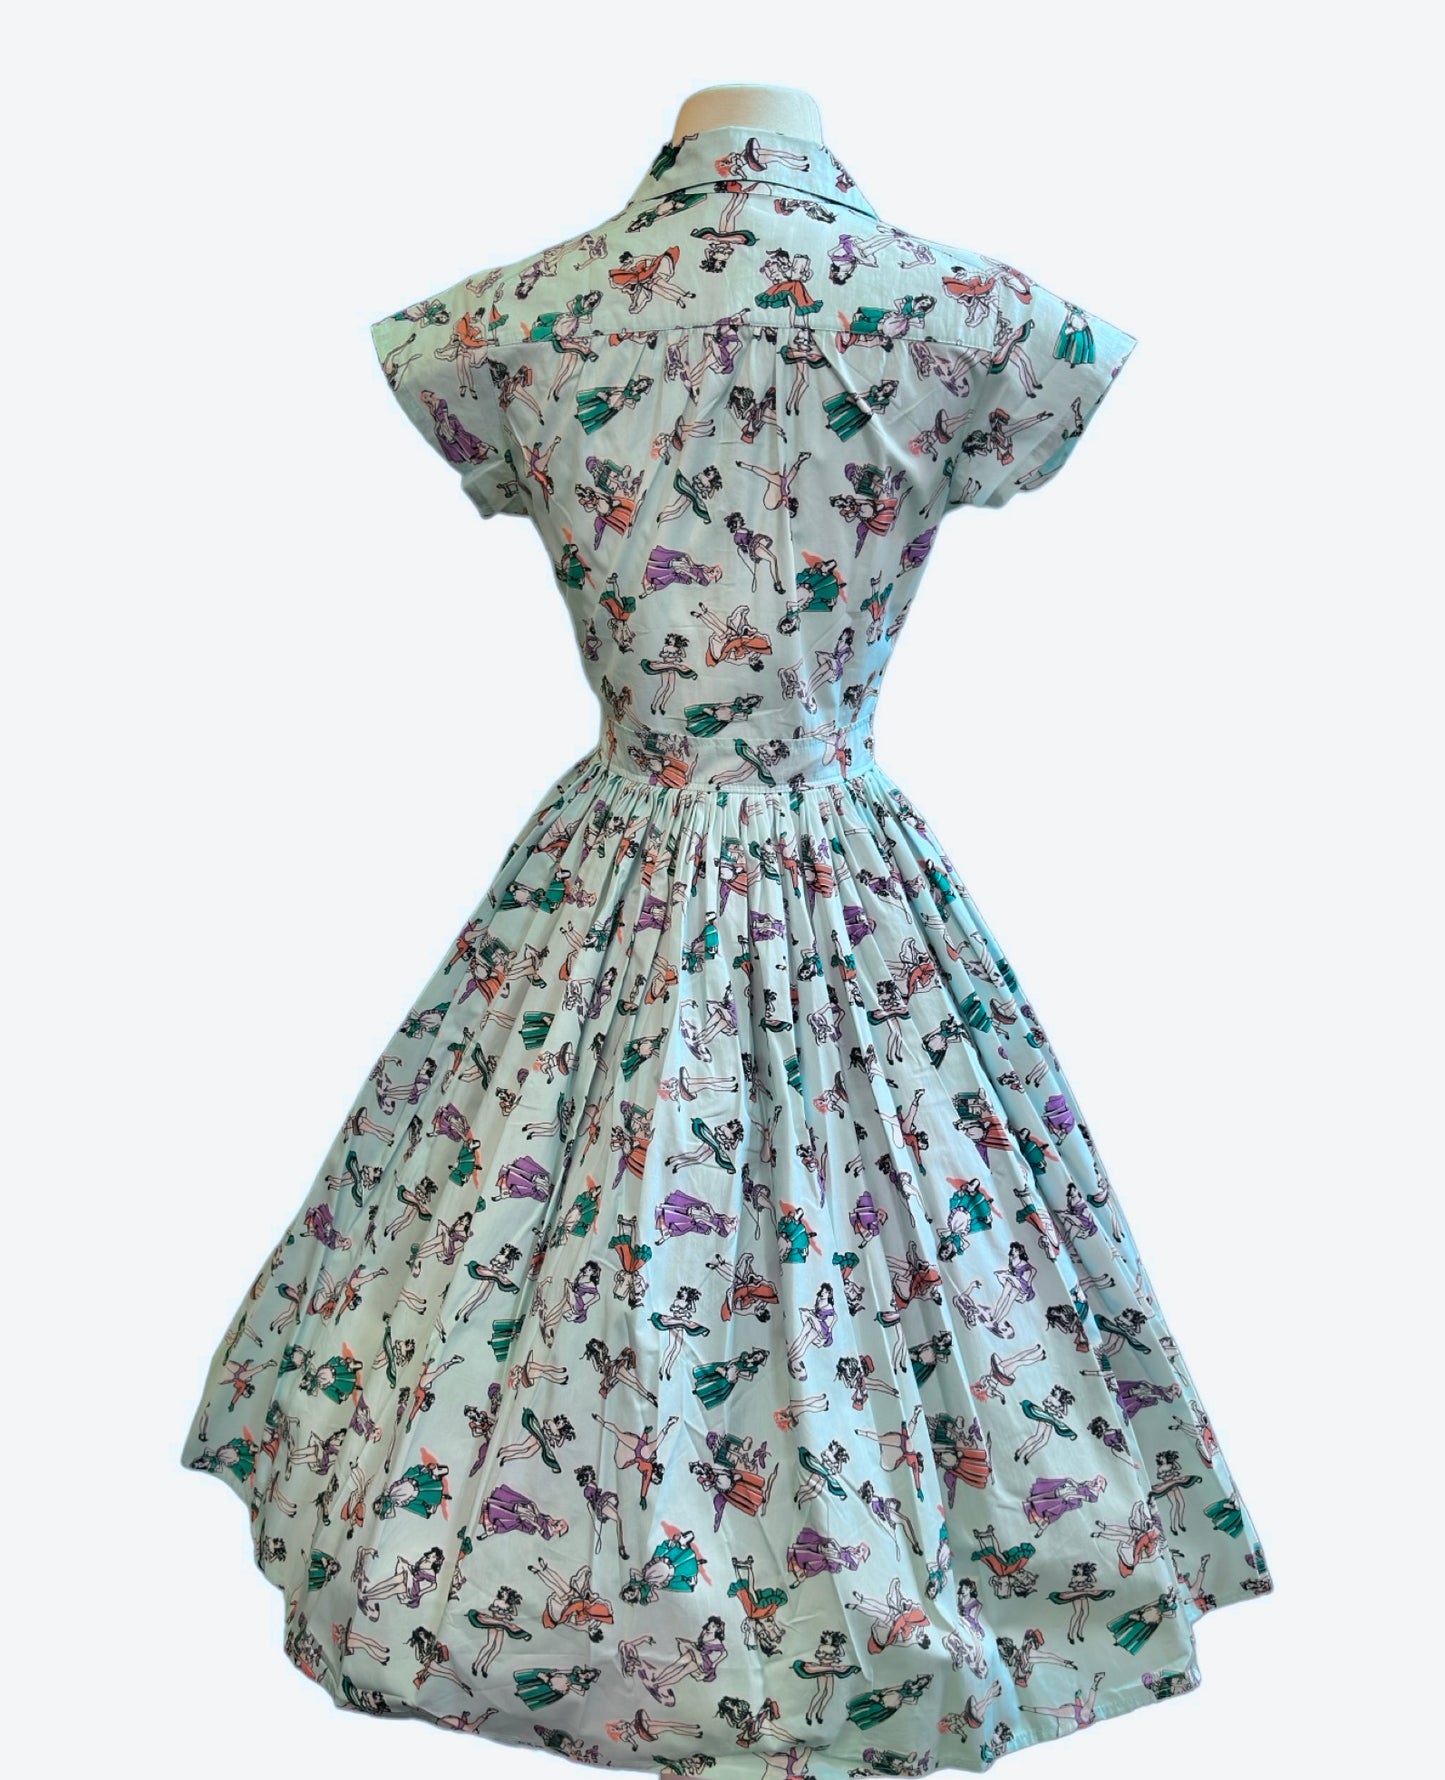 Joni Dress in Pin Up Girl Print